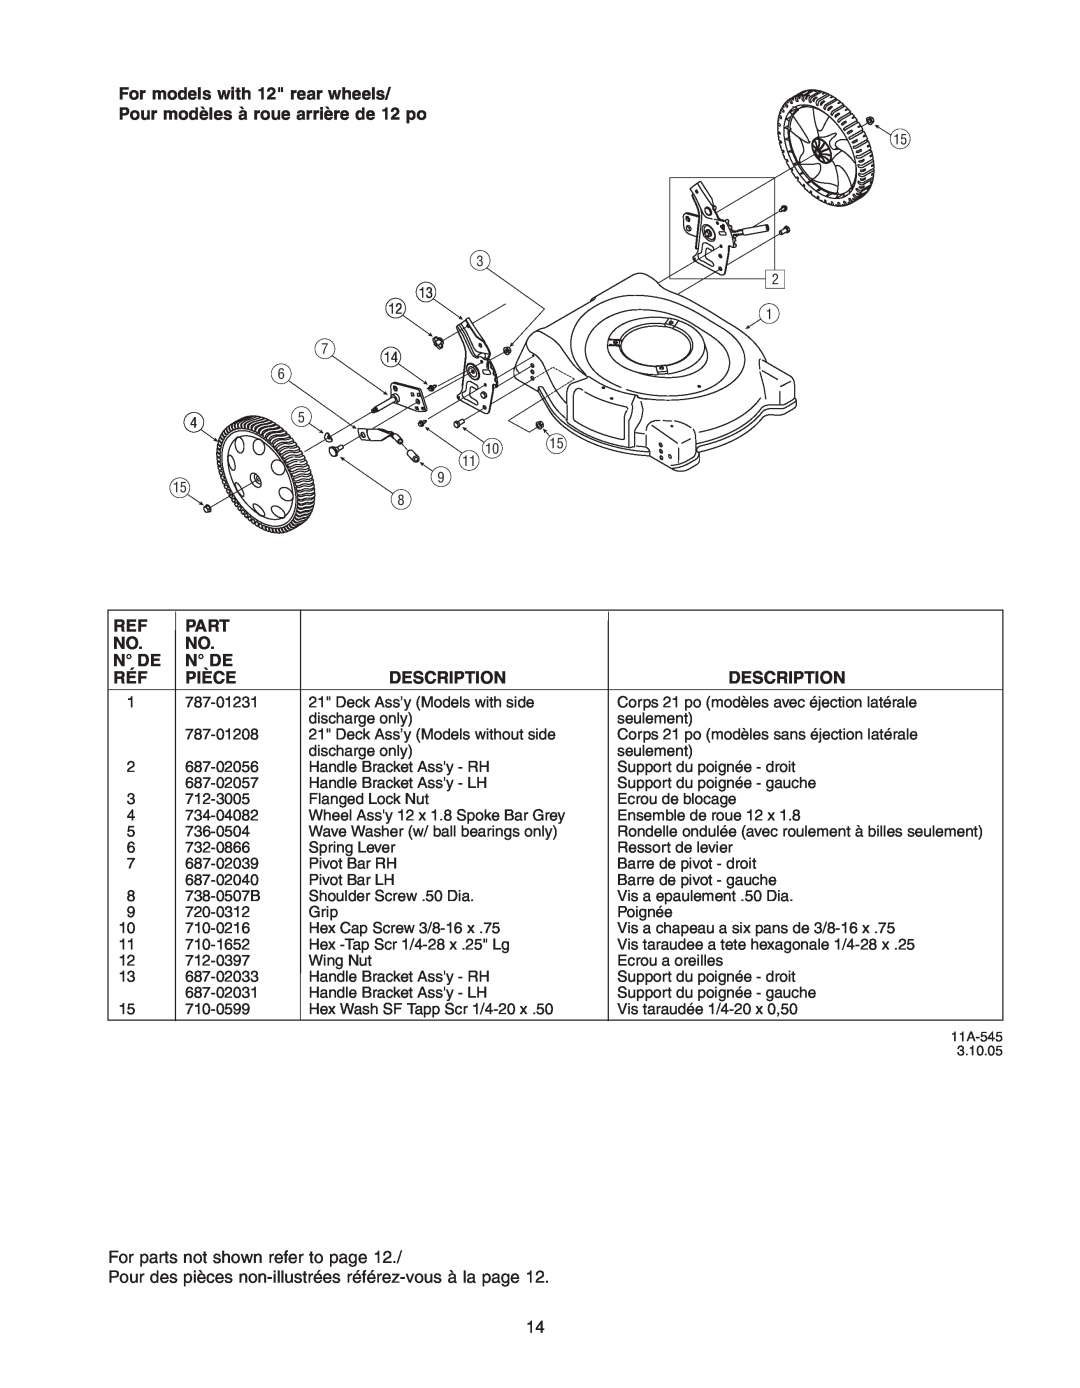 Troy-Bilt 400 Series manual Pour modèles à roue arrière de 12 po, For parts not shown refer to page 